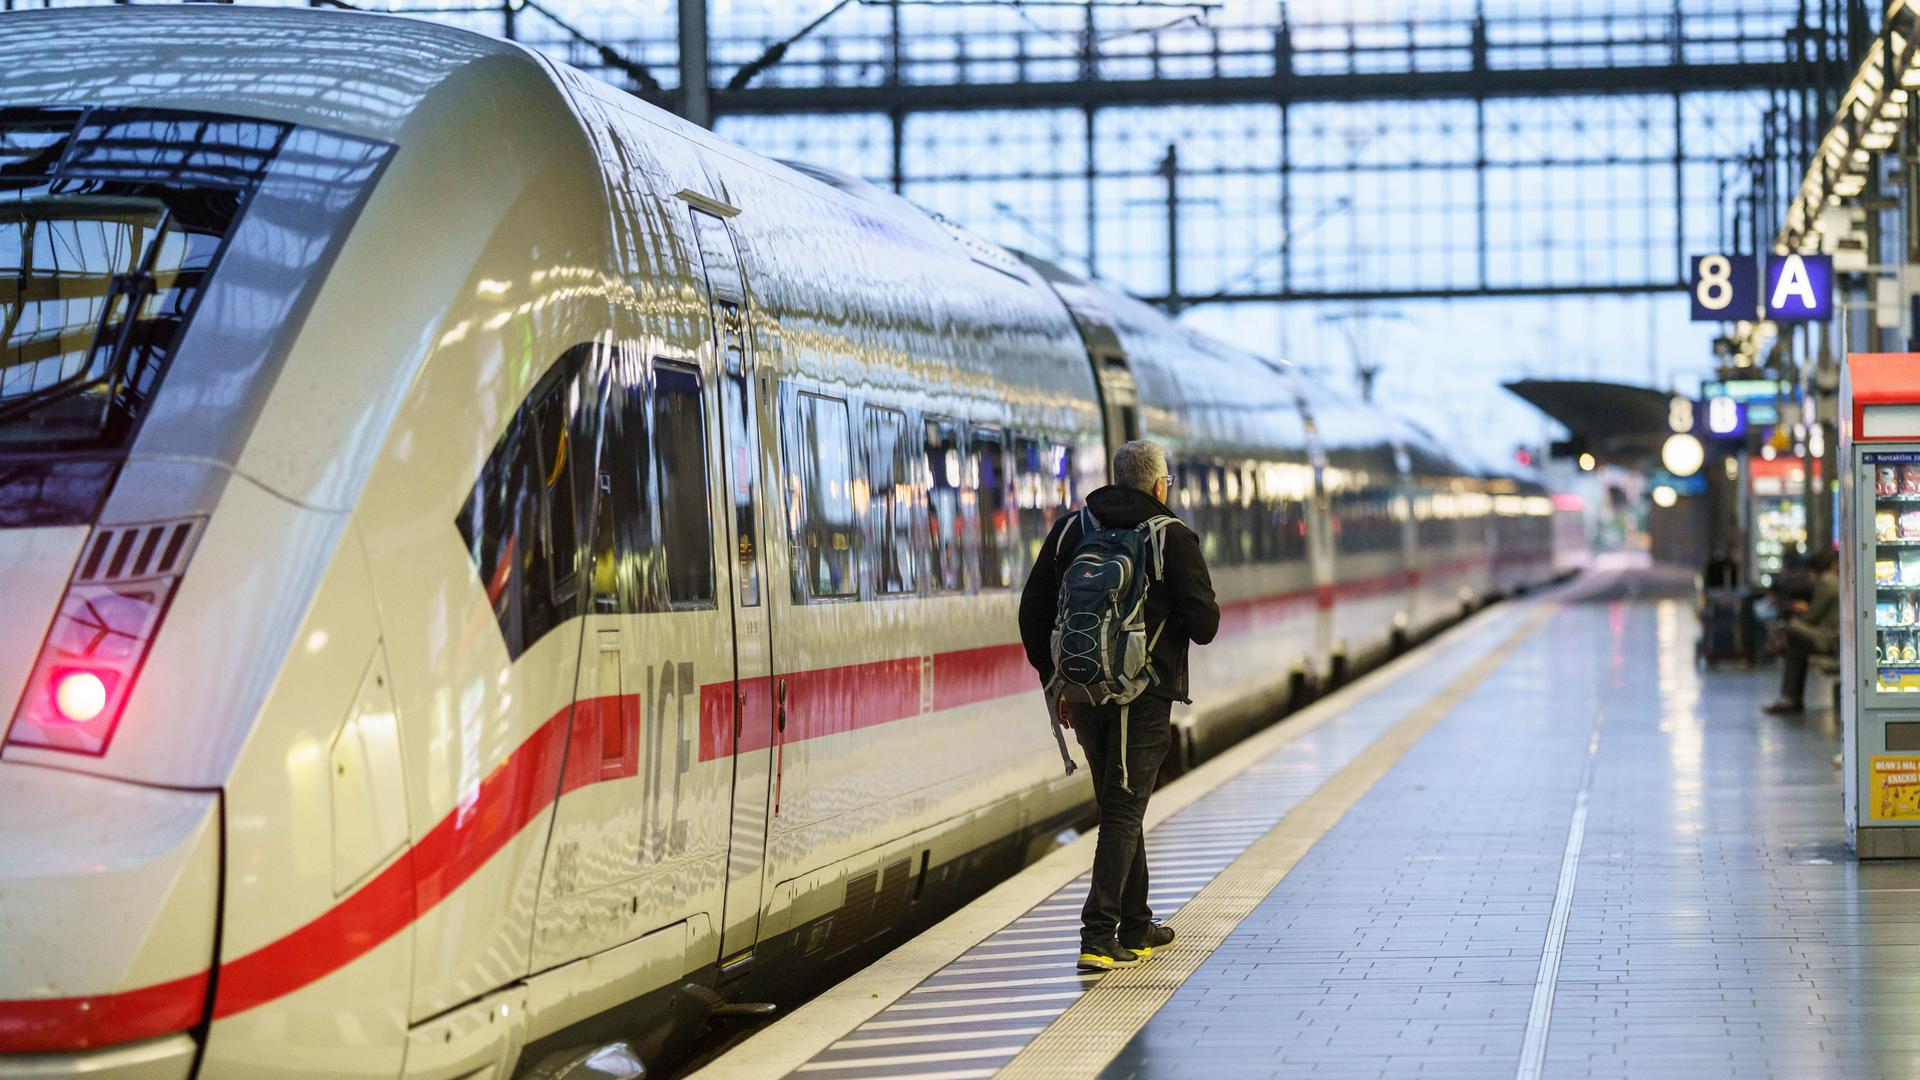 Am Hauptbahnhof Hanau: ICE-Schnapsfahrer mit fünf Promille in 1. Klasse